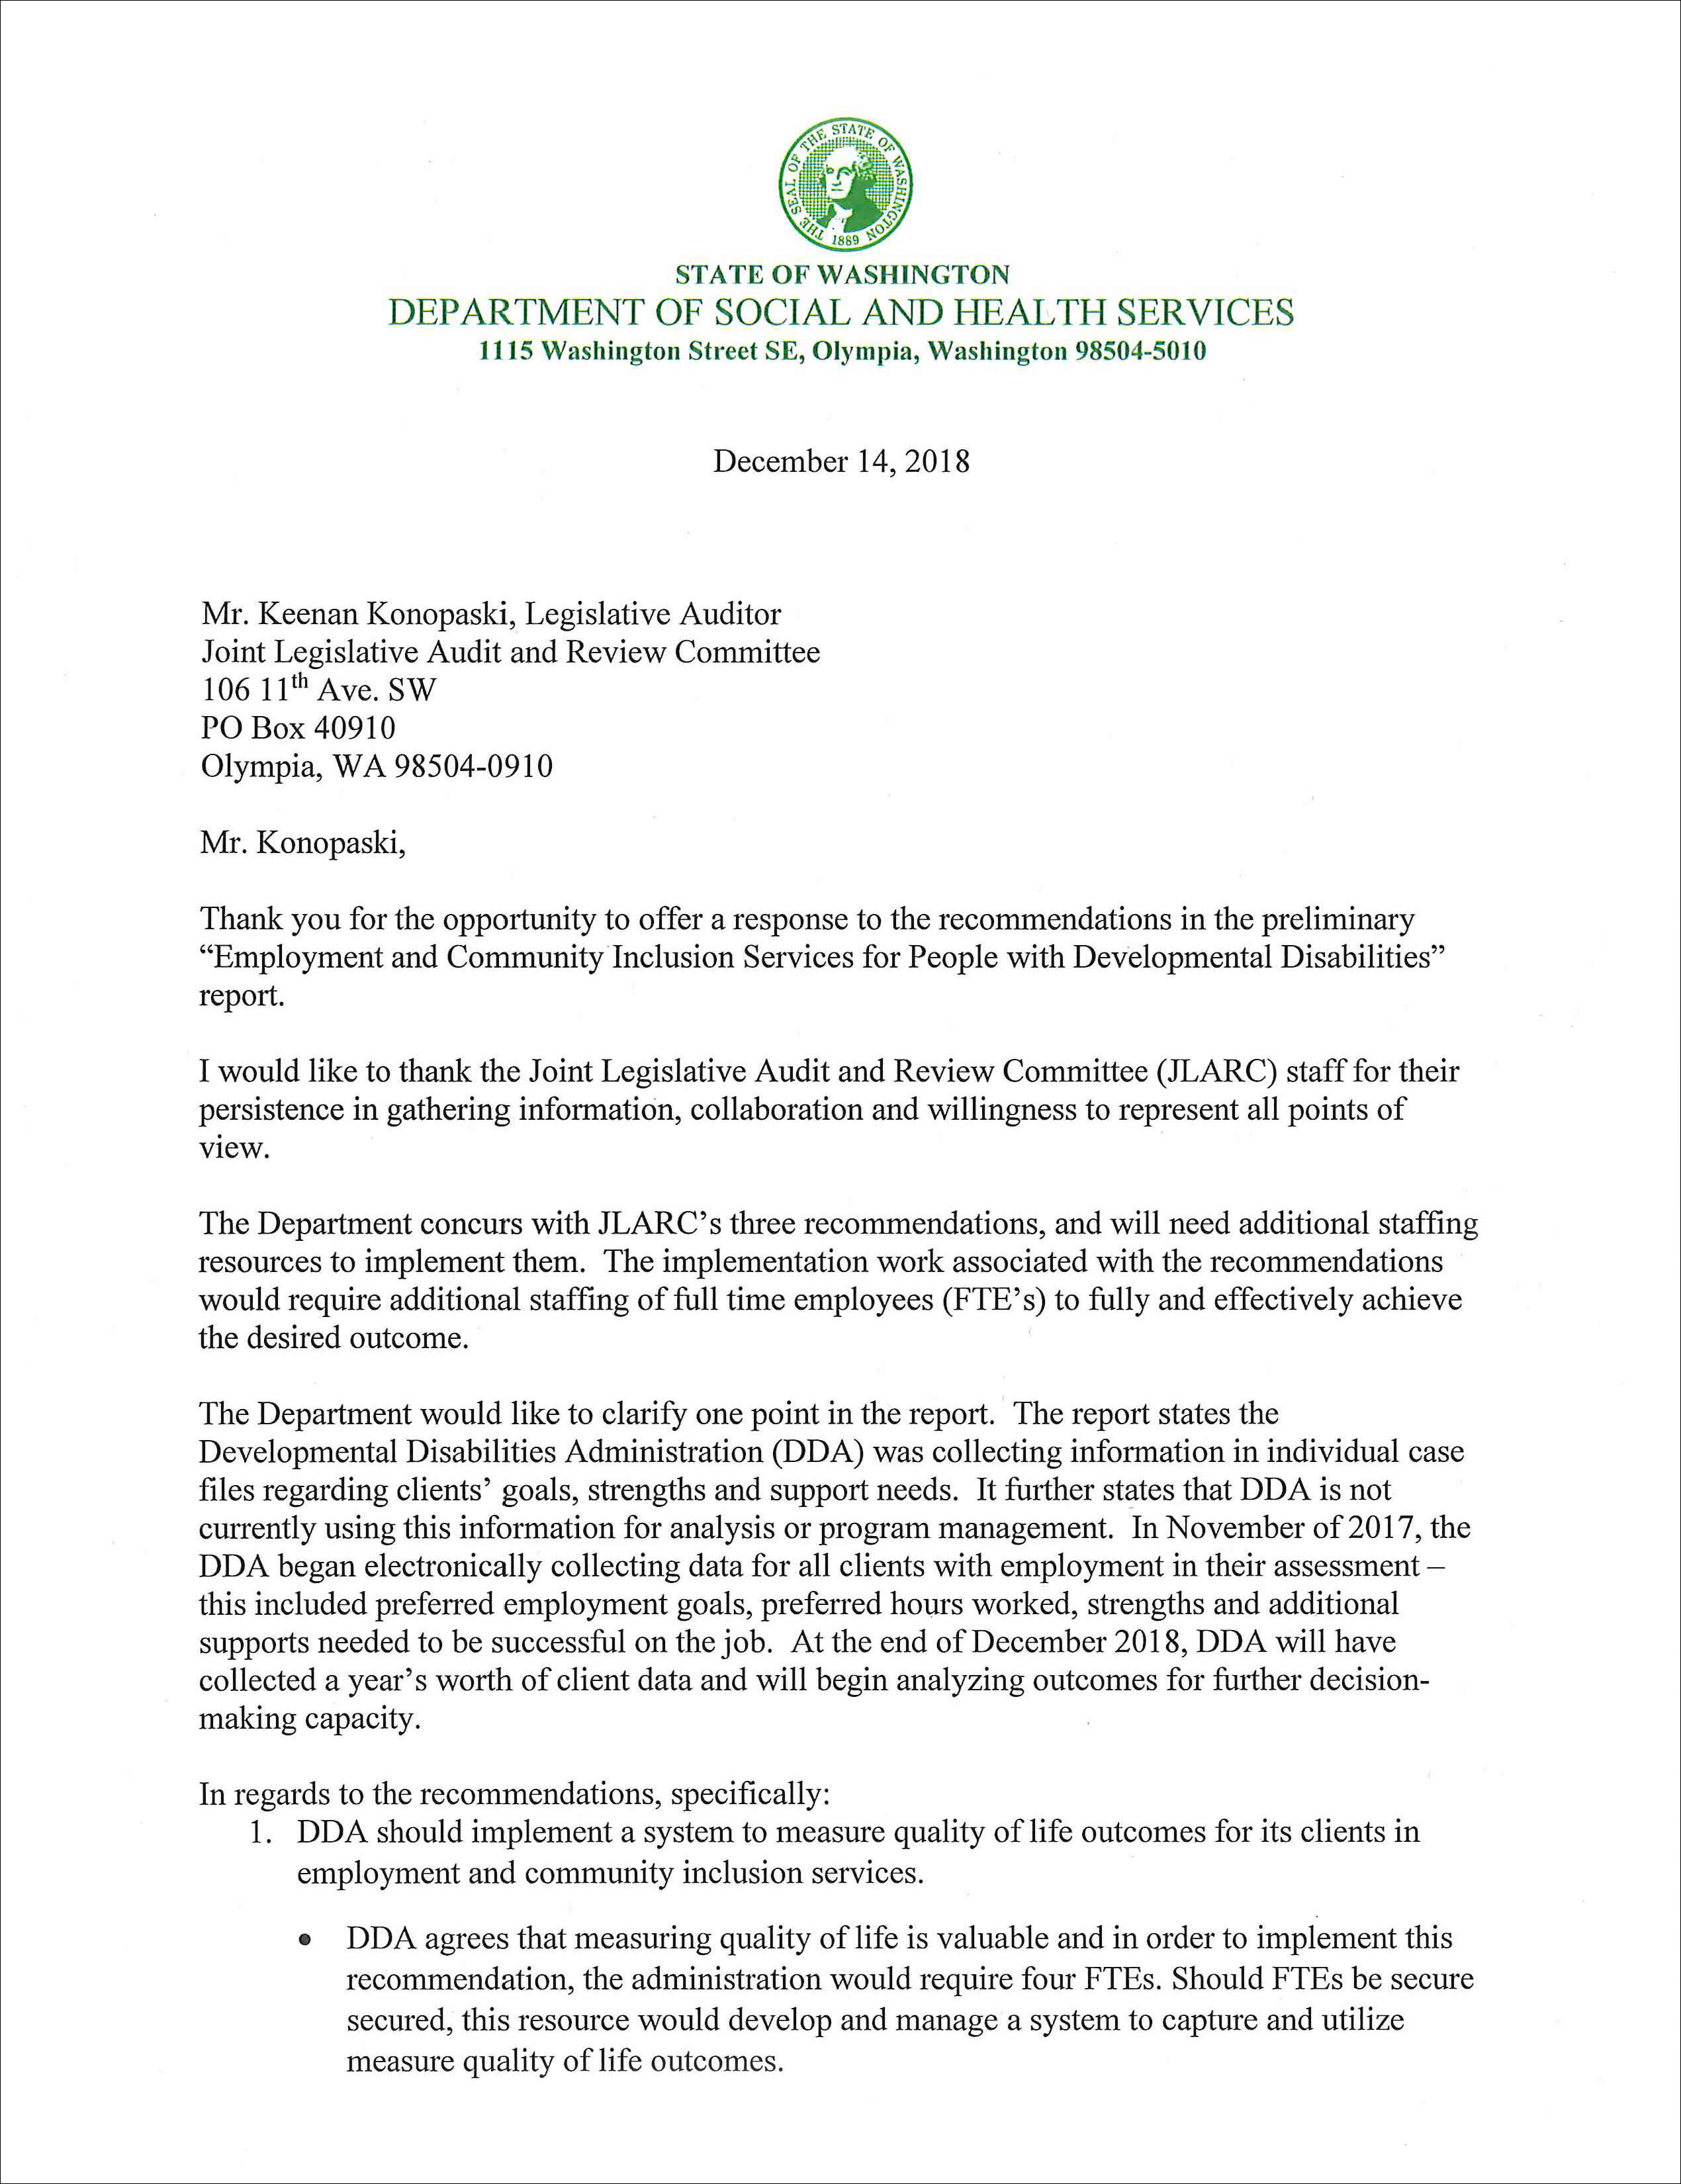 Letter of response from DSHS.